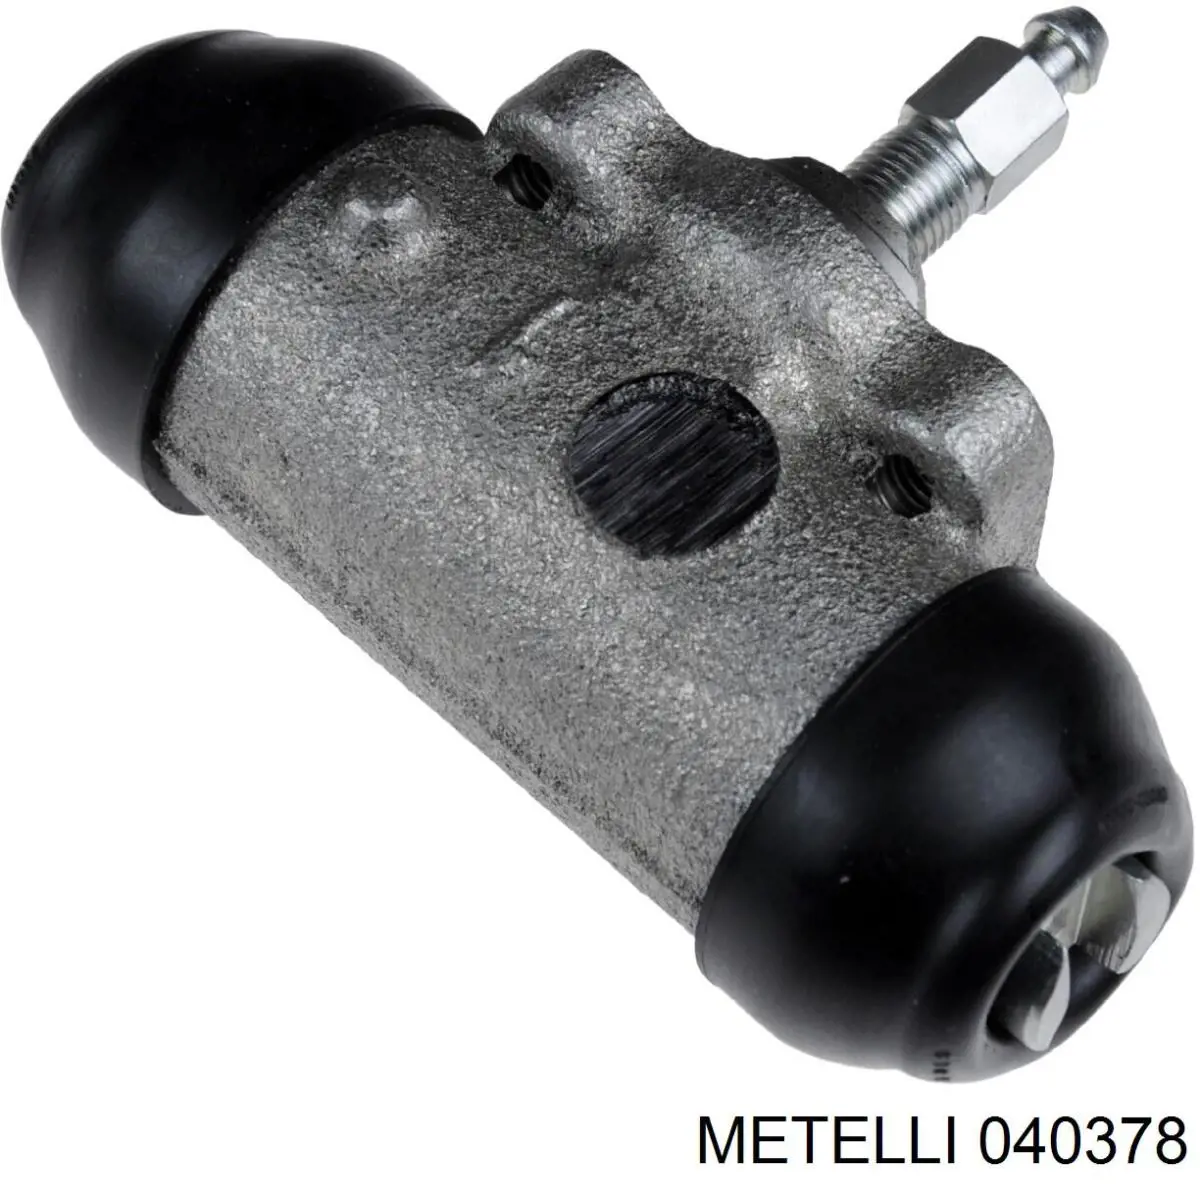 04-0378 Metelli цилиндр тормозной колесный рабочий задний